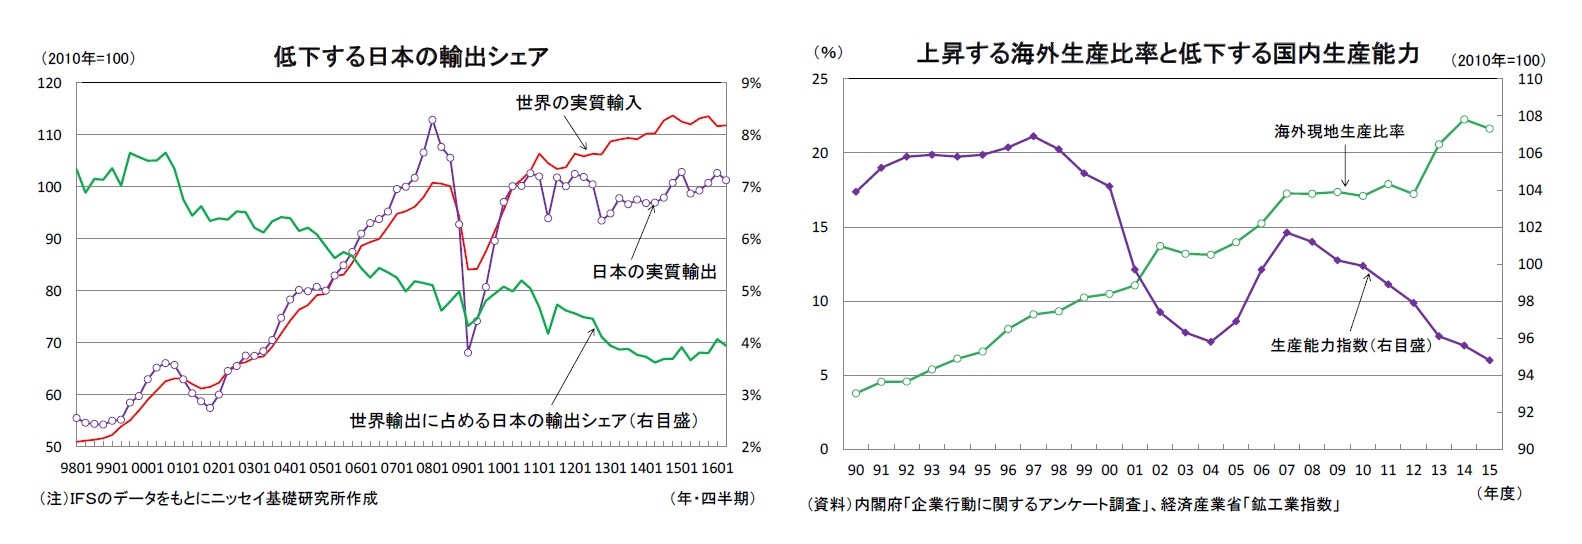 低下する日本の輸出シェア/上昇する海外生産比率と低下する国内生産能力